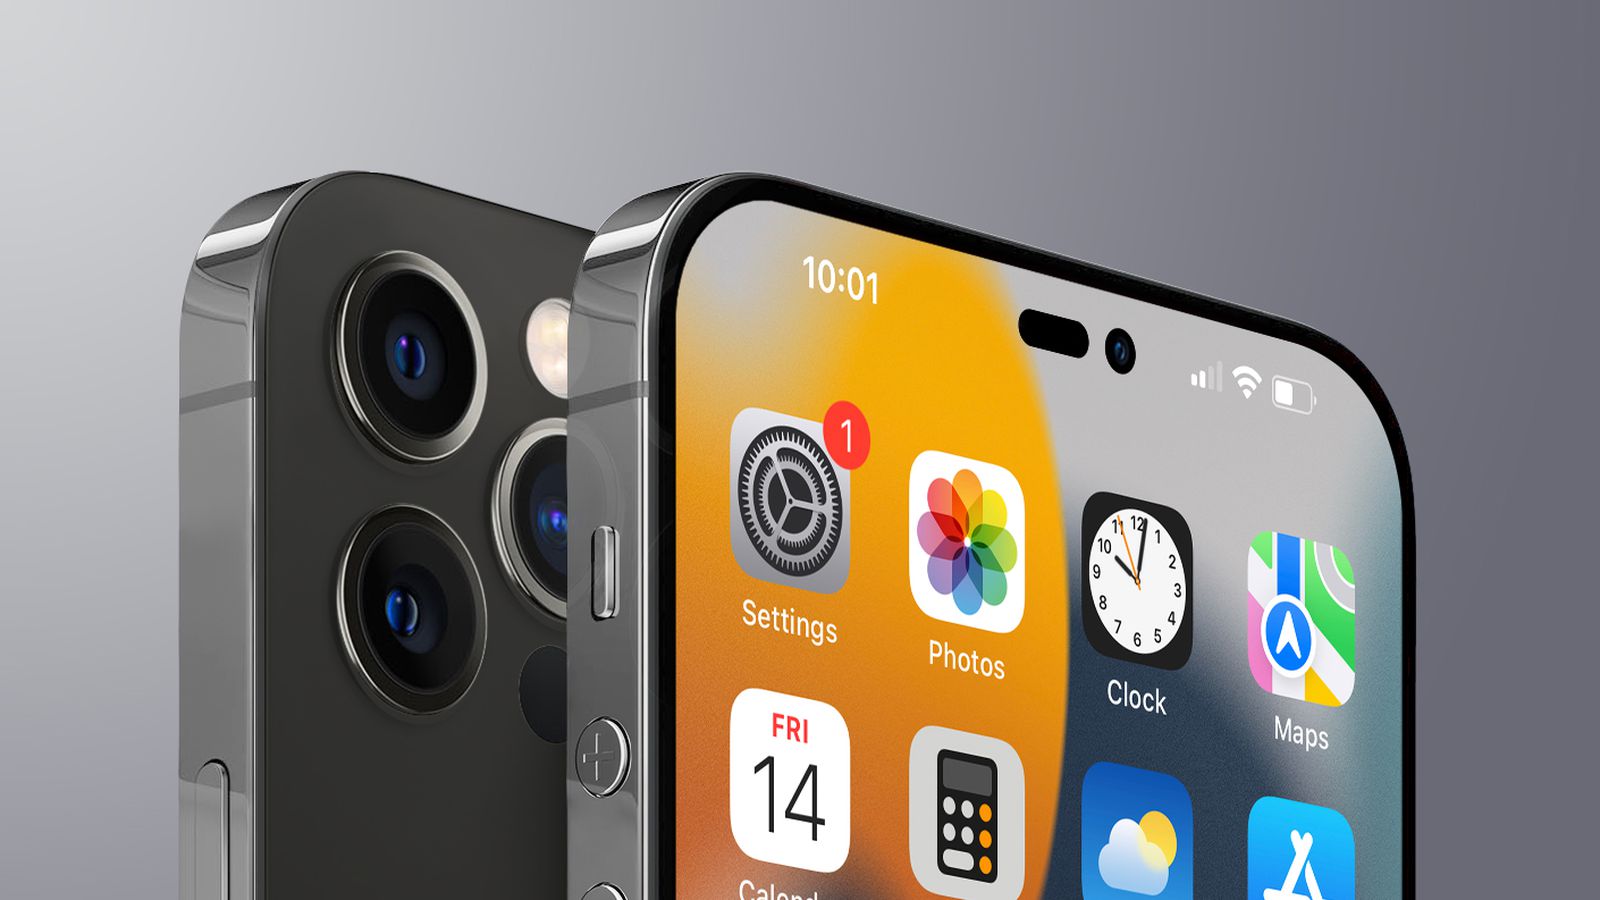 Tính năng ProMotion trên iPhone 14 Pro sẽ mang đến cho bạn trải nghiệm tuyệt vời hơn khi sử dụng điện thoại. Tốc độ xử lý nhanh hơn, độ trung thực hình ảnh cao hơn và màn hình hiển thị chất lượng tốt hơn. Hãy khám phá những tính năng tuyệt vời này qua những hình ảnh chất lượng cao và cập nhật ngay cho chiếc điện thoại của bạn!